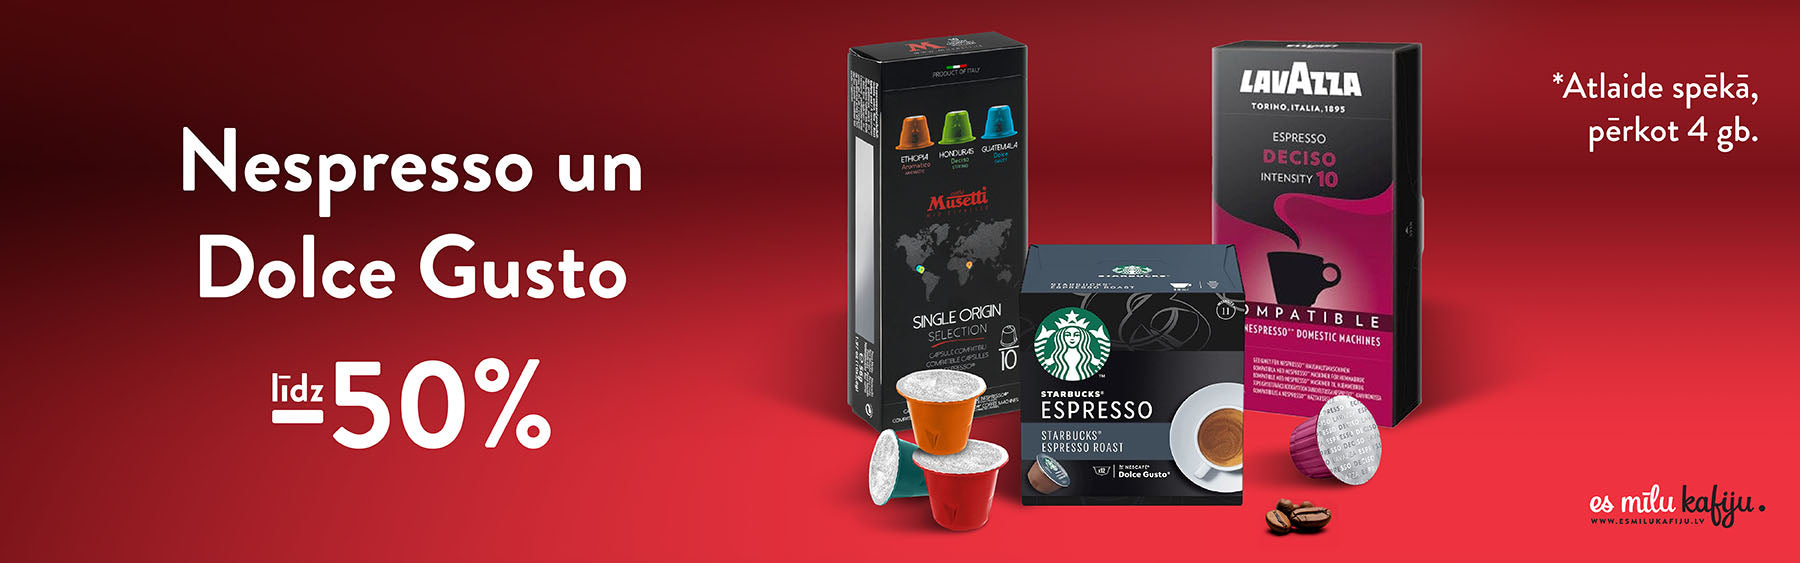 Nespresso un Dolce Gusto kafijas kapsulas par 50% lētāk